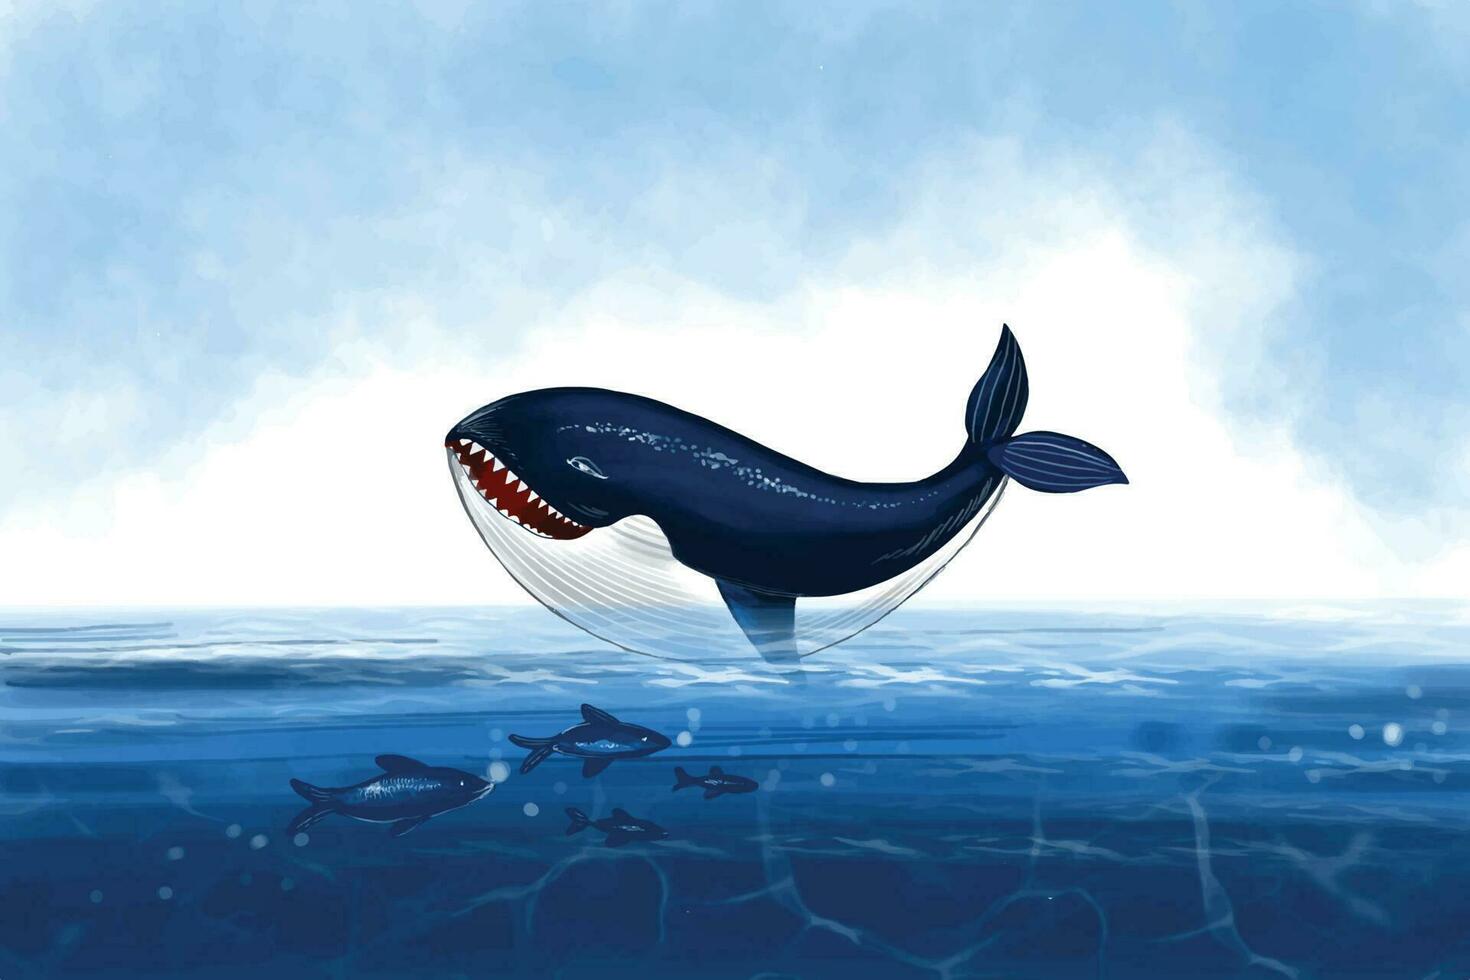 grande ballena y pescado fueron nadando submarino Oceano día antecedentes vector